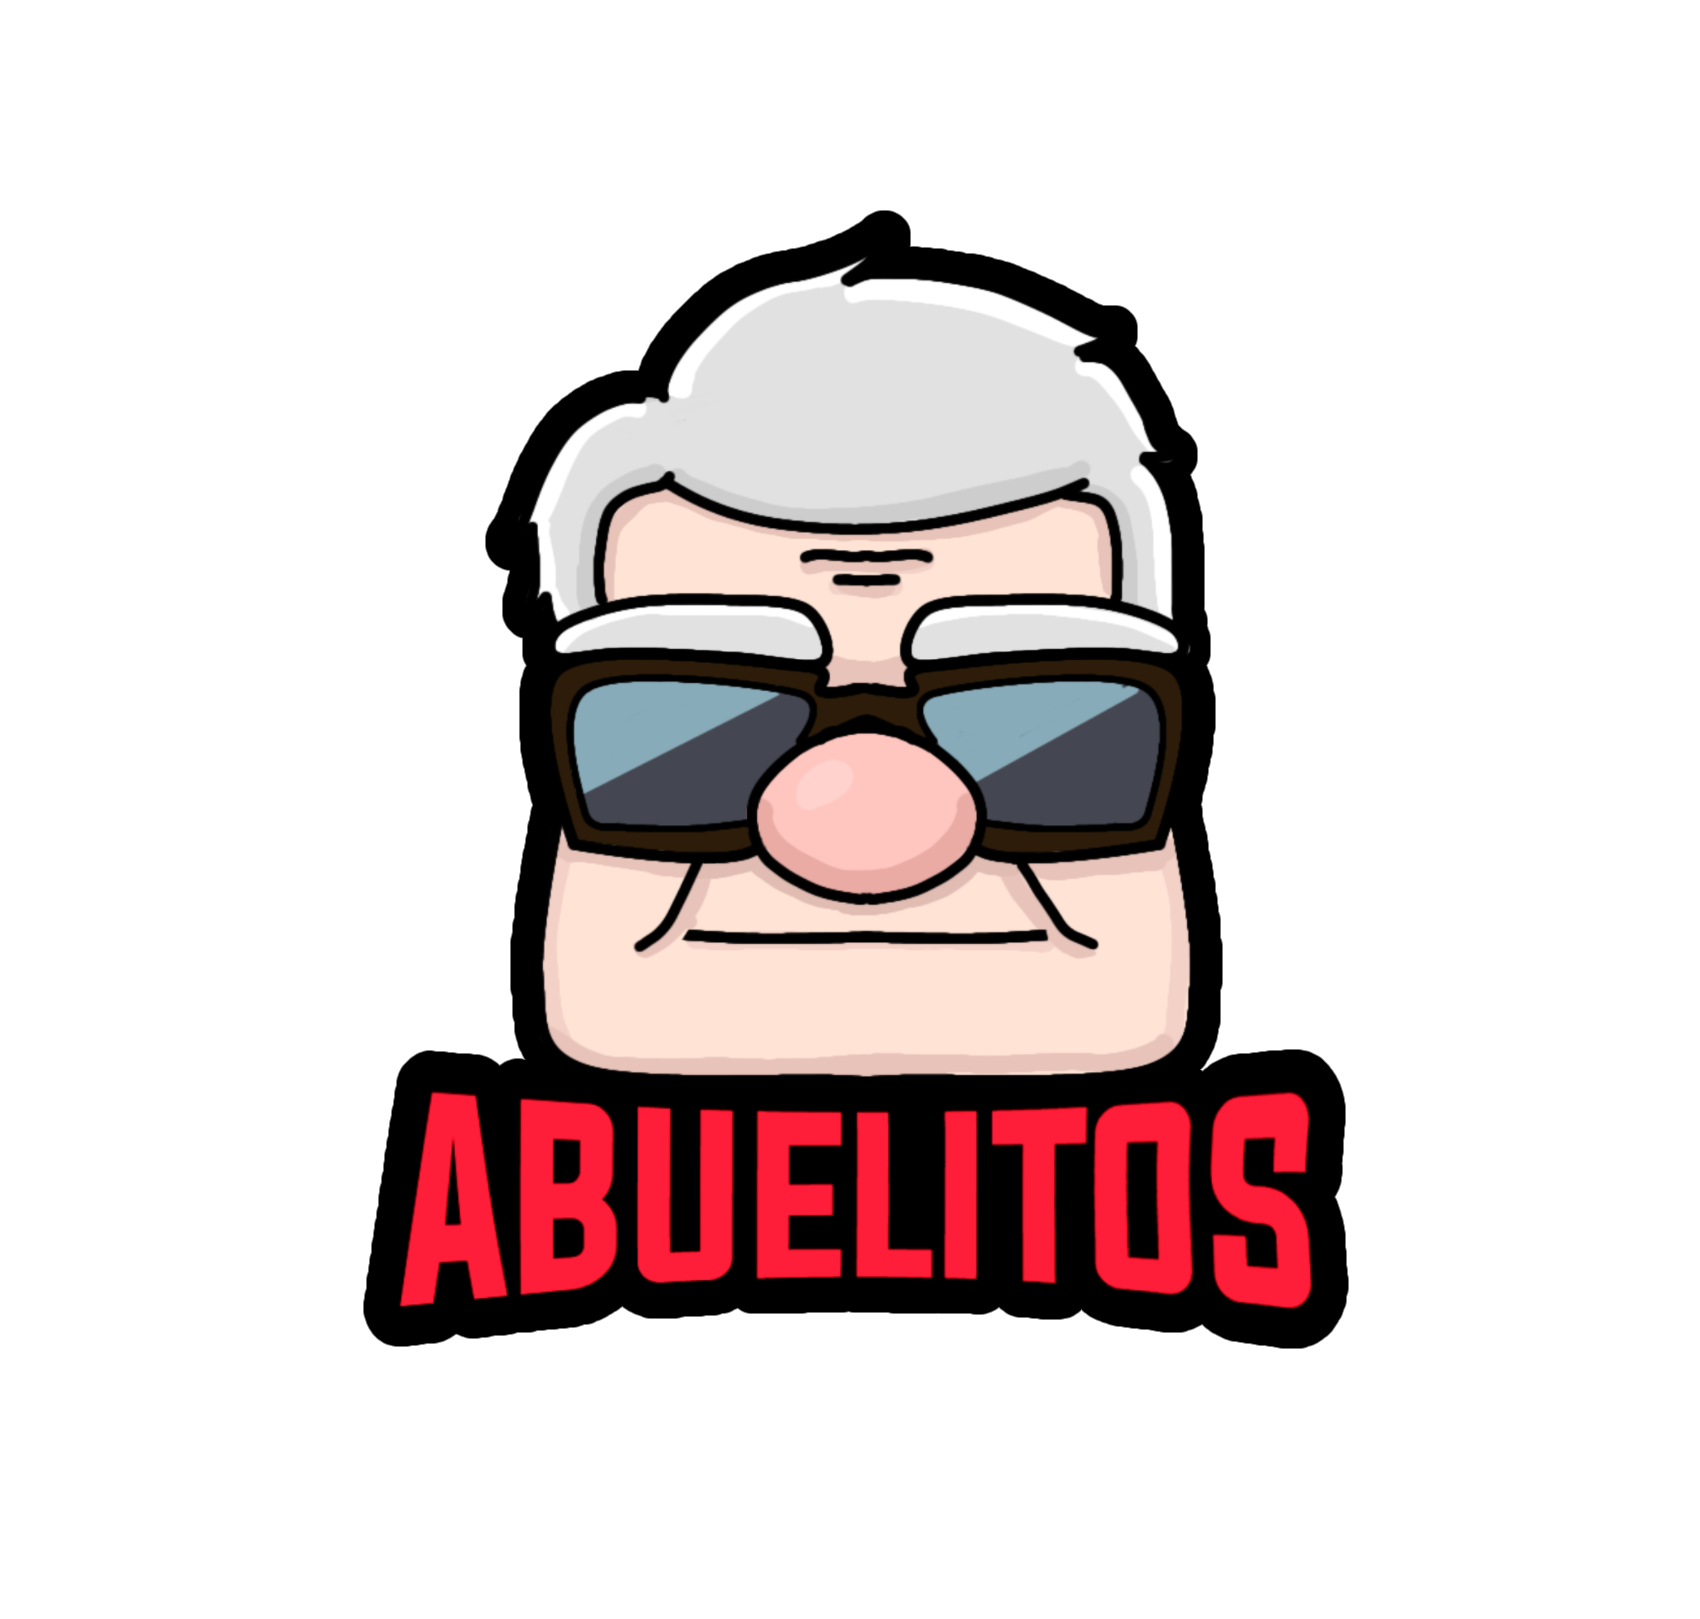 Abuelitos's logo